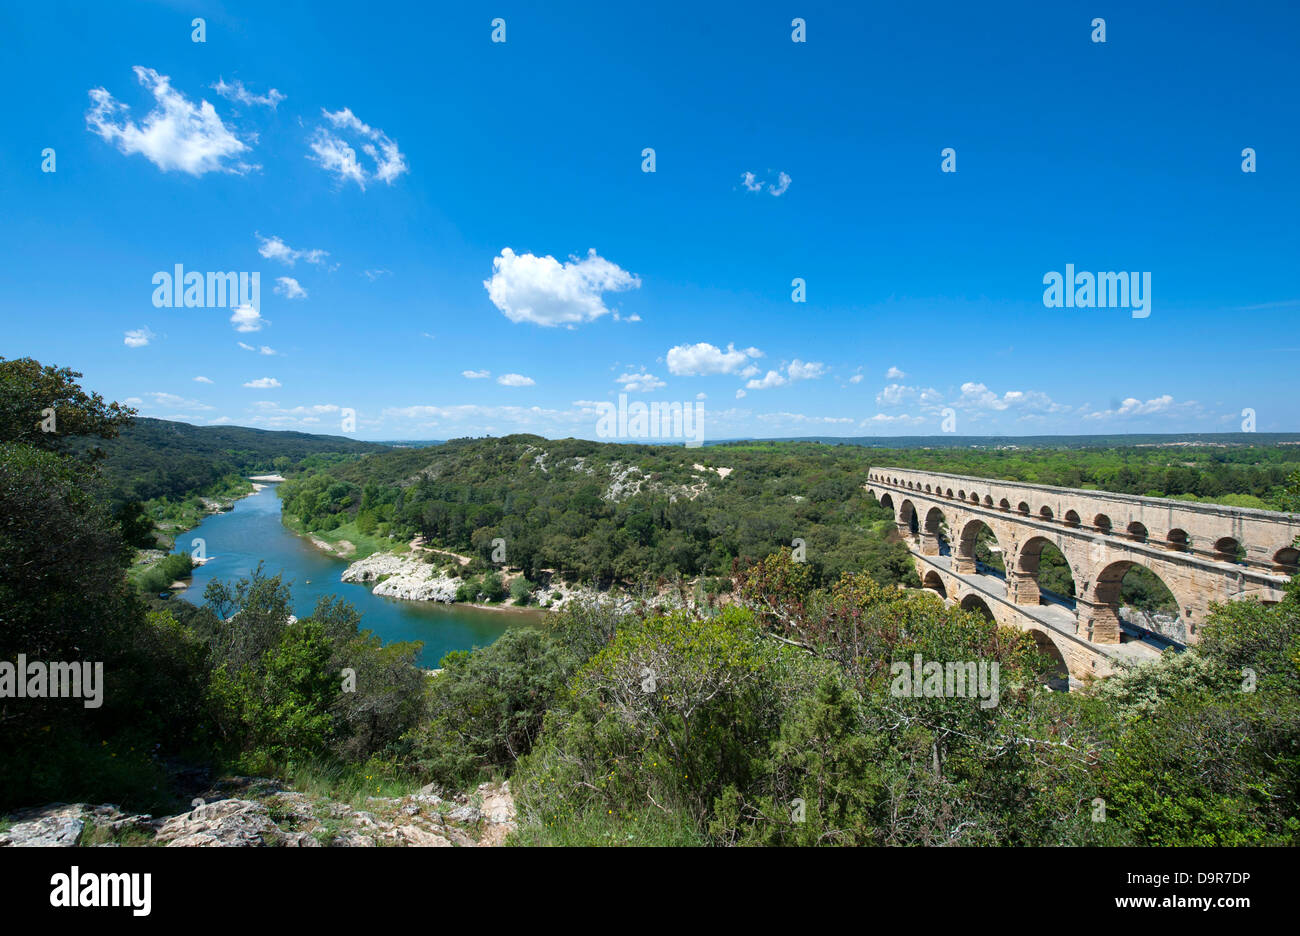 Site du patrimoine mondial de l'Pont du Gard, un aqueduc romain en passant la rivière Gard dans le Gard près de Nîmes, dans le sud de la France Banque D'Images